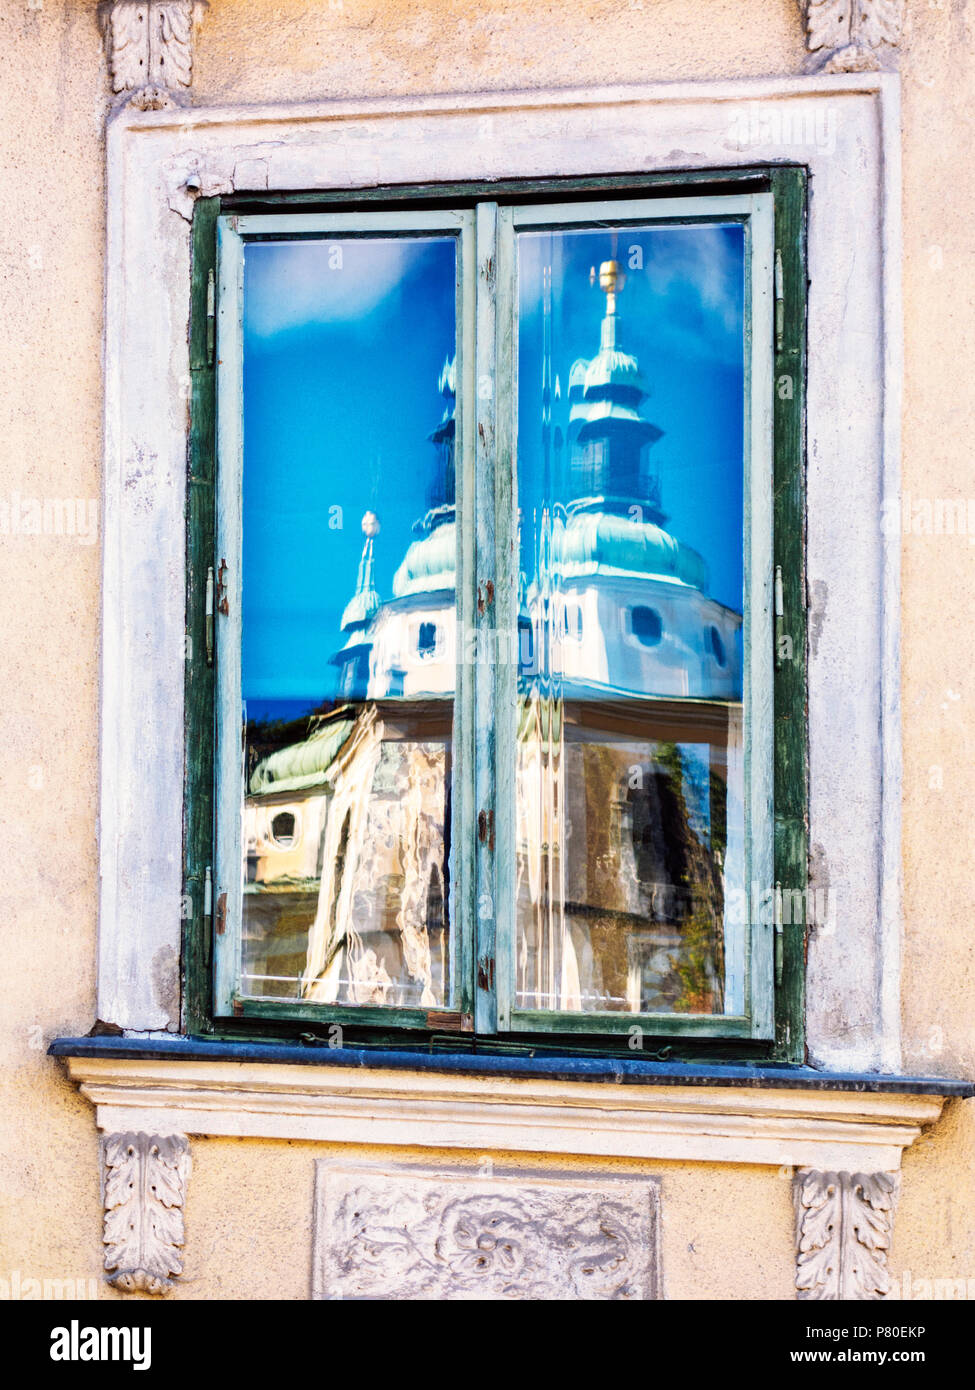 Die Glockentürme von Ljubljana Kathedrale in einem Fenster eines antiken Gebäudes, Ljubljana, Slowenien Stockfoto